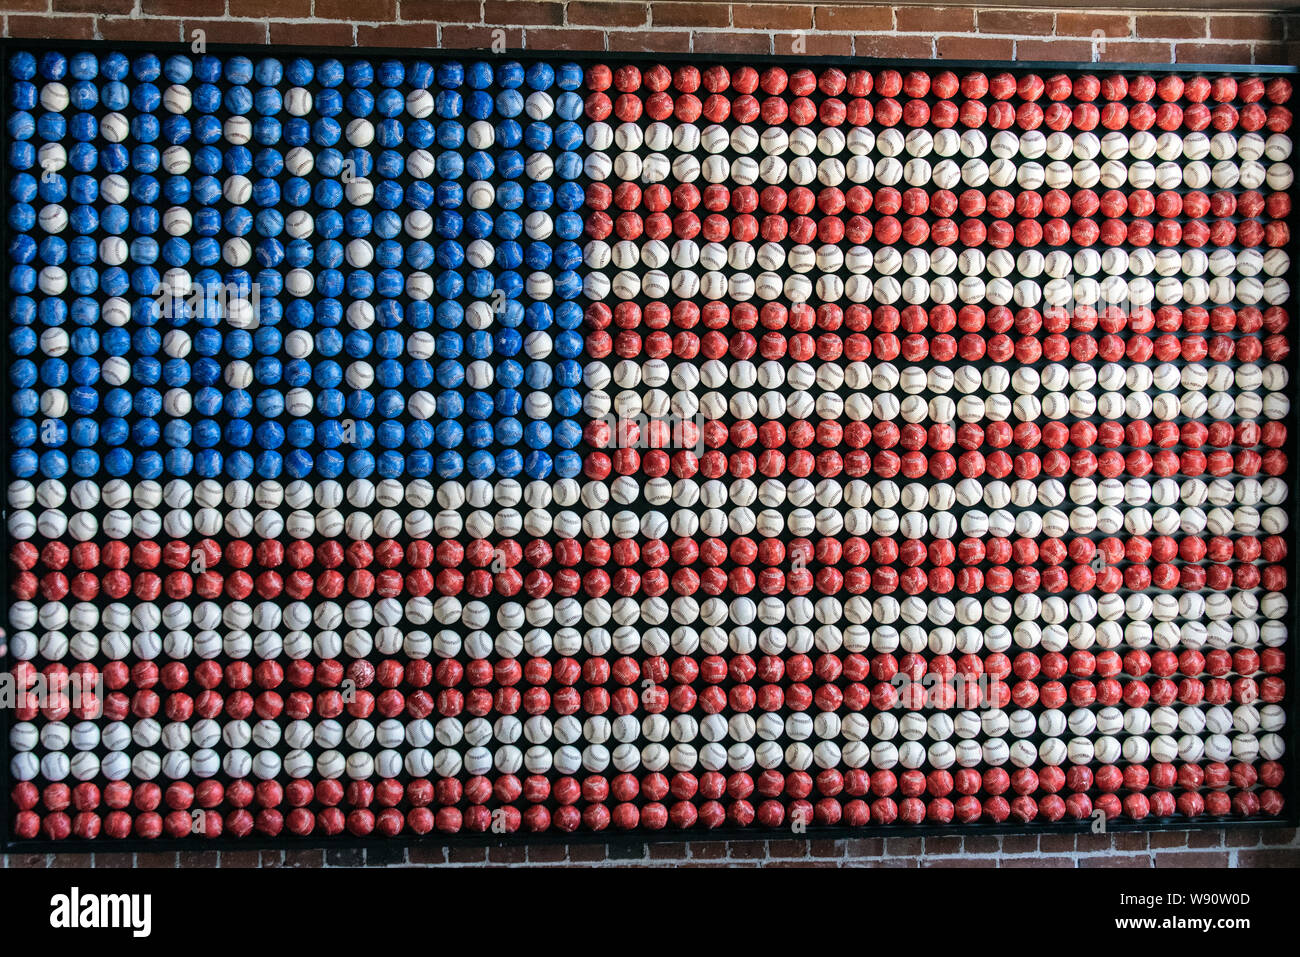 Rot, weiß und blau gefärbten Baseballs sind an der Wand Kunst arrangiert eine amerikanische Flagge zu bilden. Stockfoto